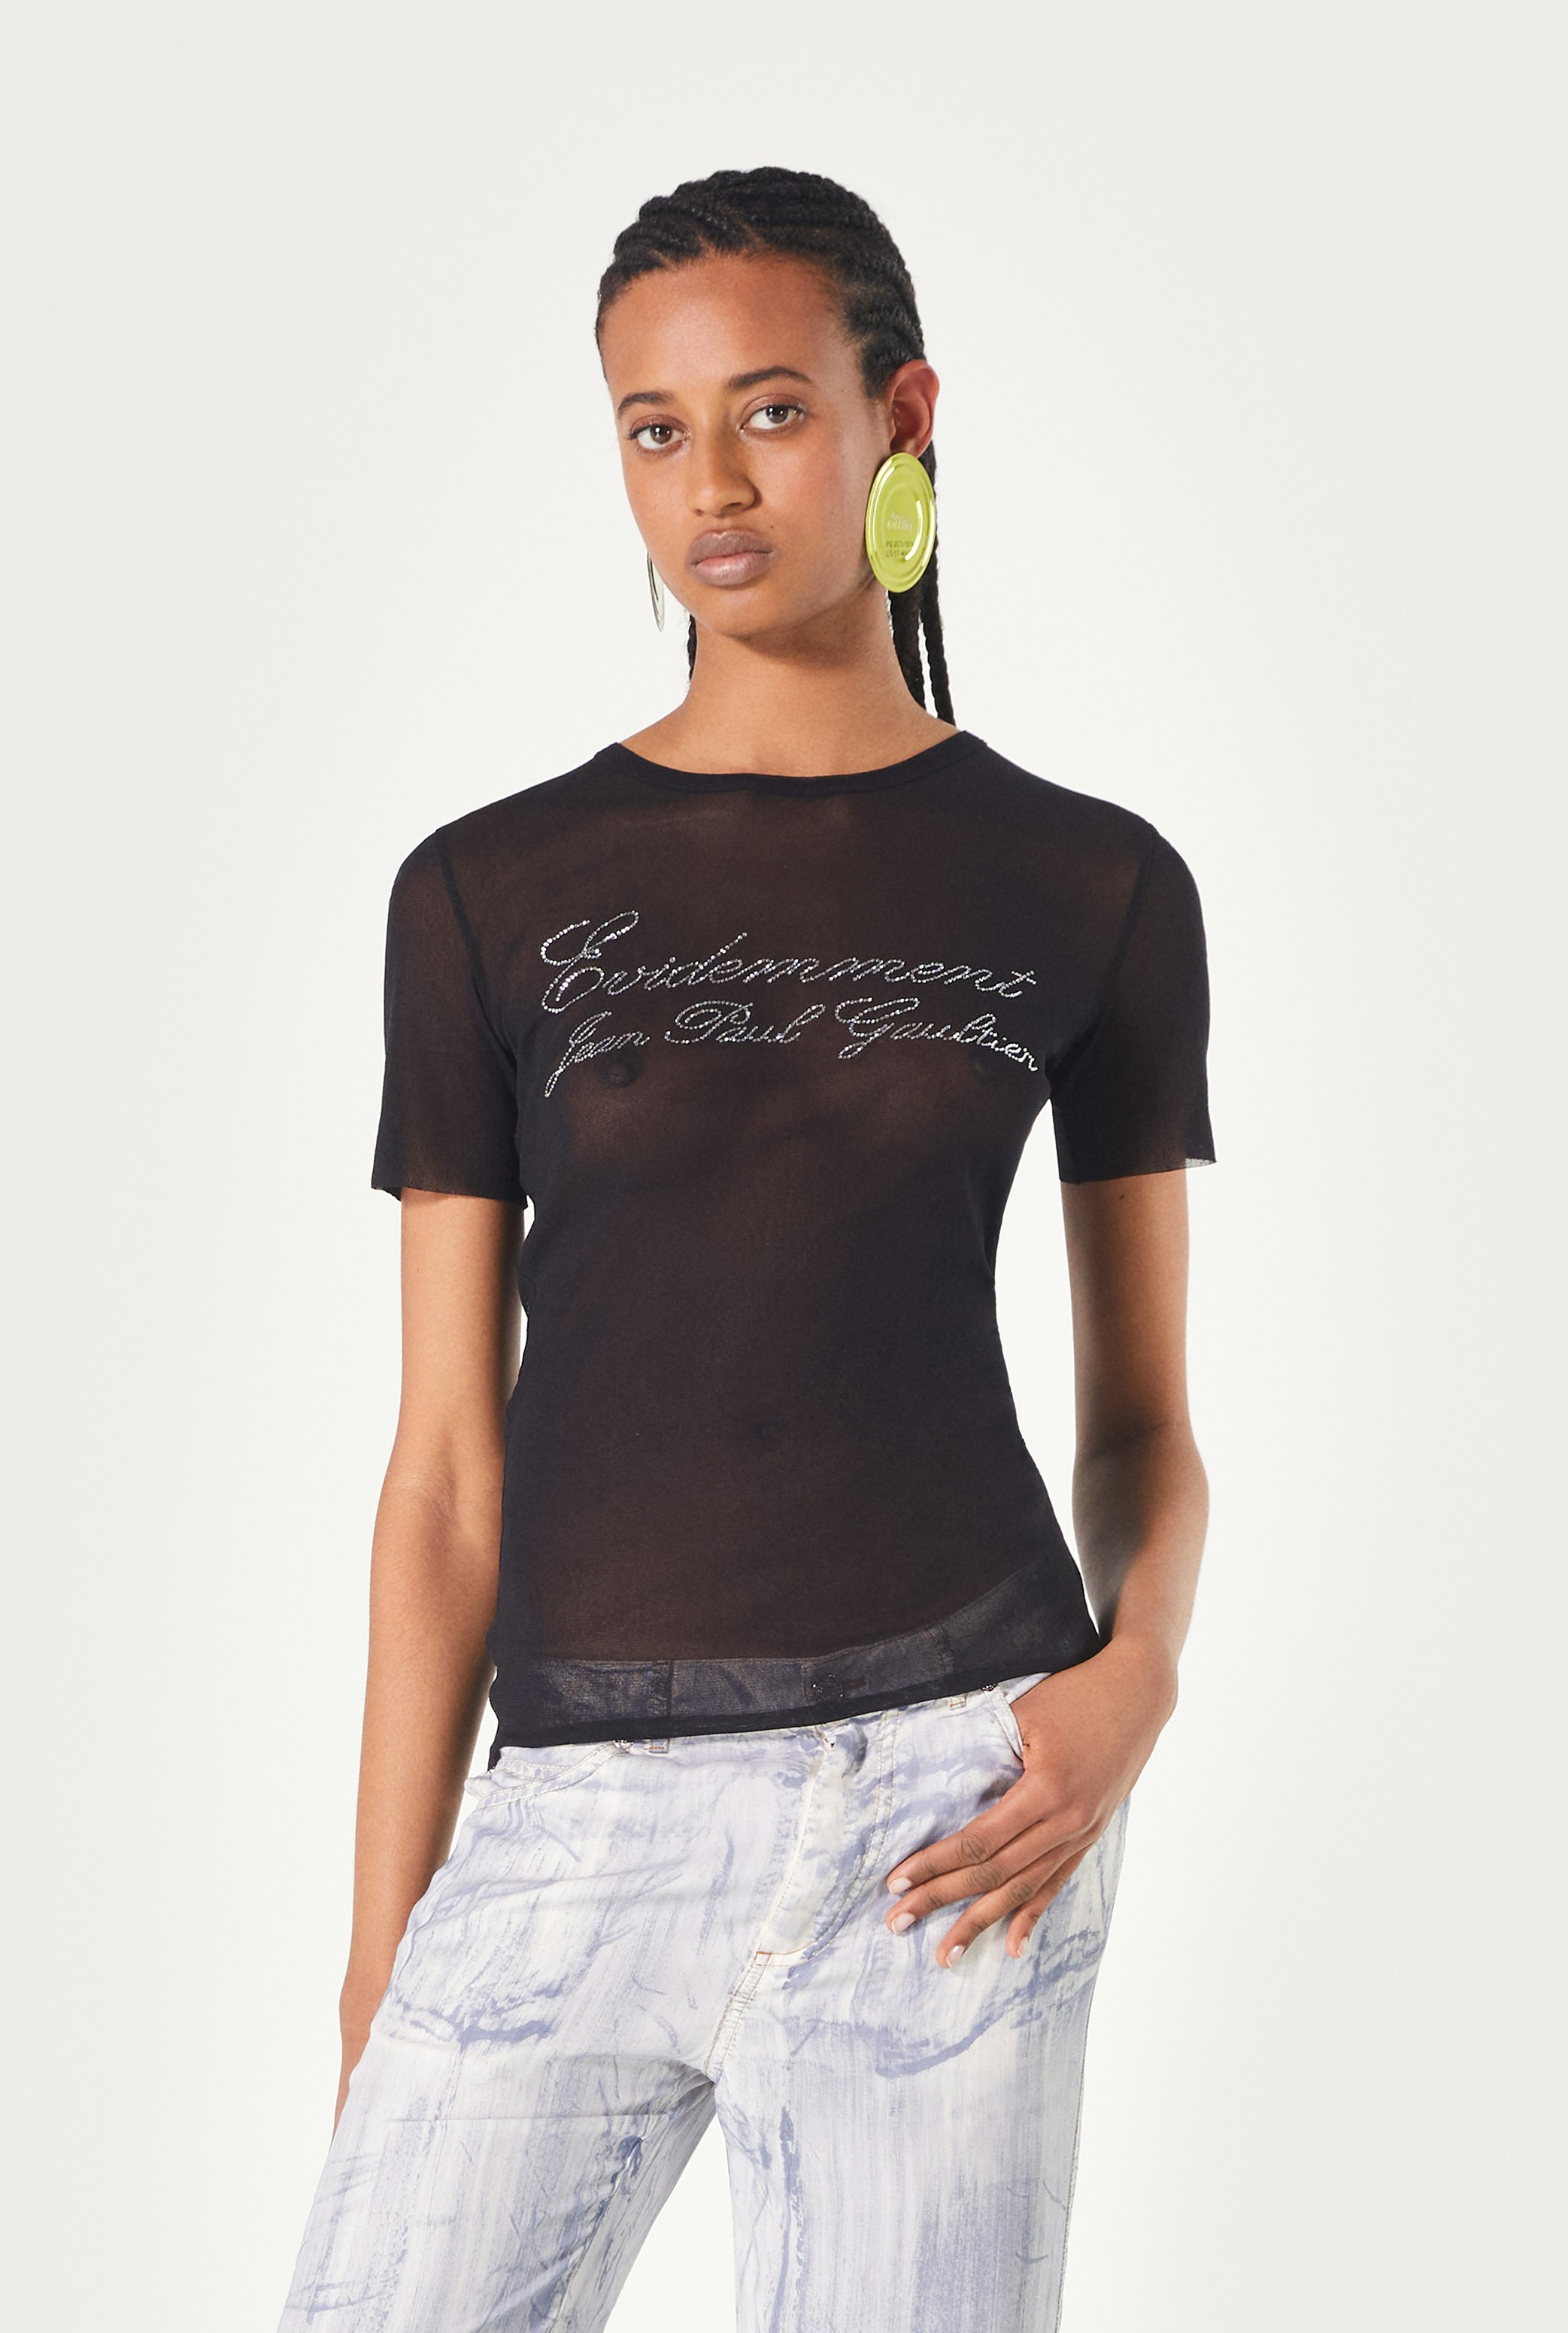 The Black Évidemment Tulle T-Shirt Jean Paul Gaultier